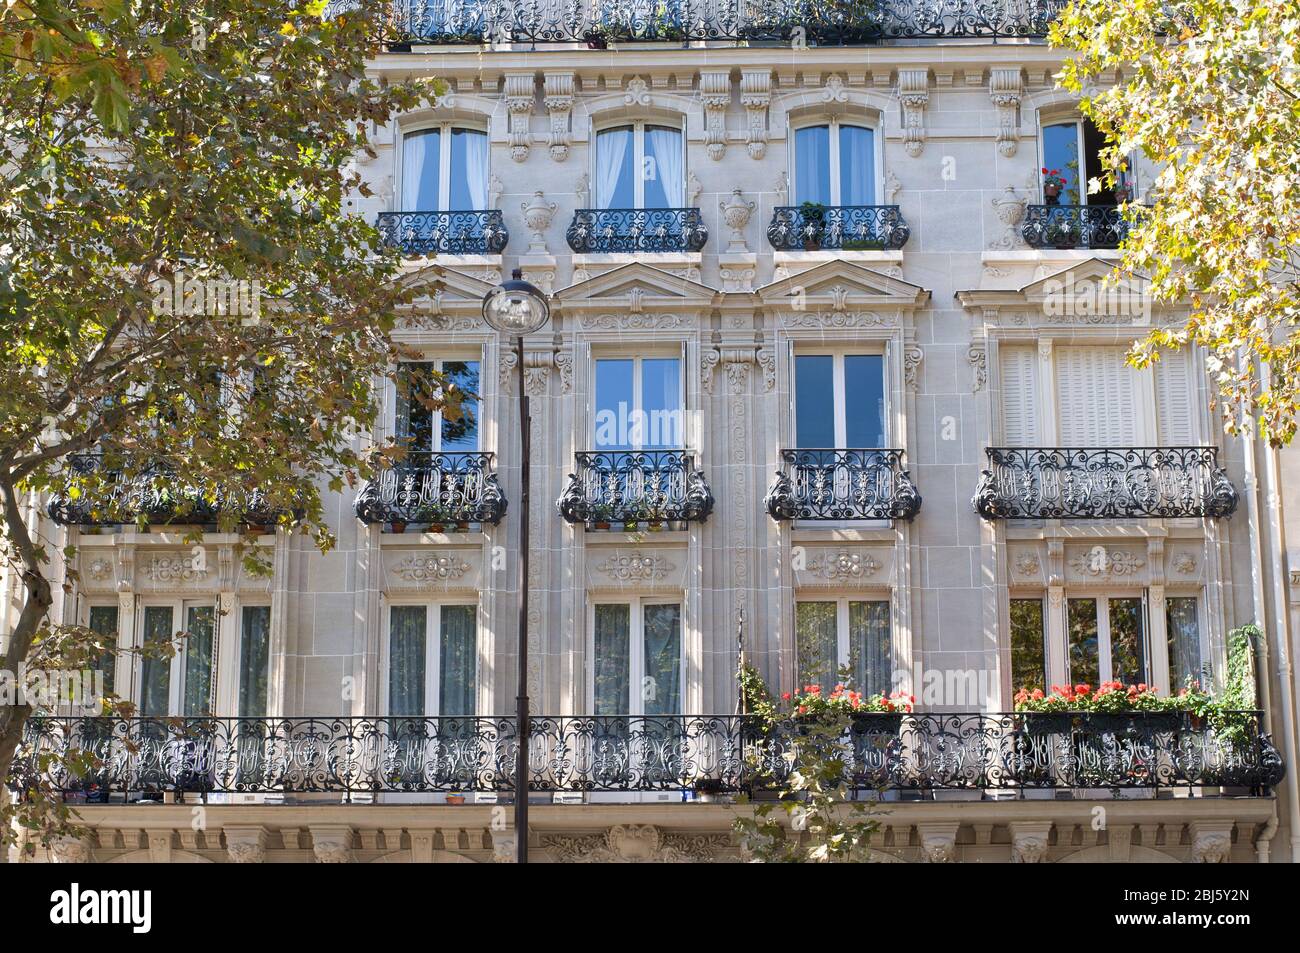 Design typique de l'architecture parisienne. La façade du bâtiment français de style moderne avec fenêtres et balcons français à Paris, France. Banque D'Images